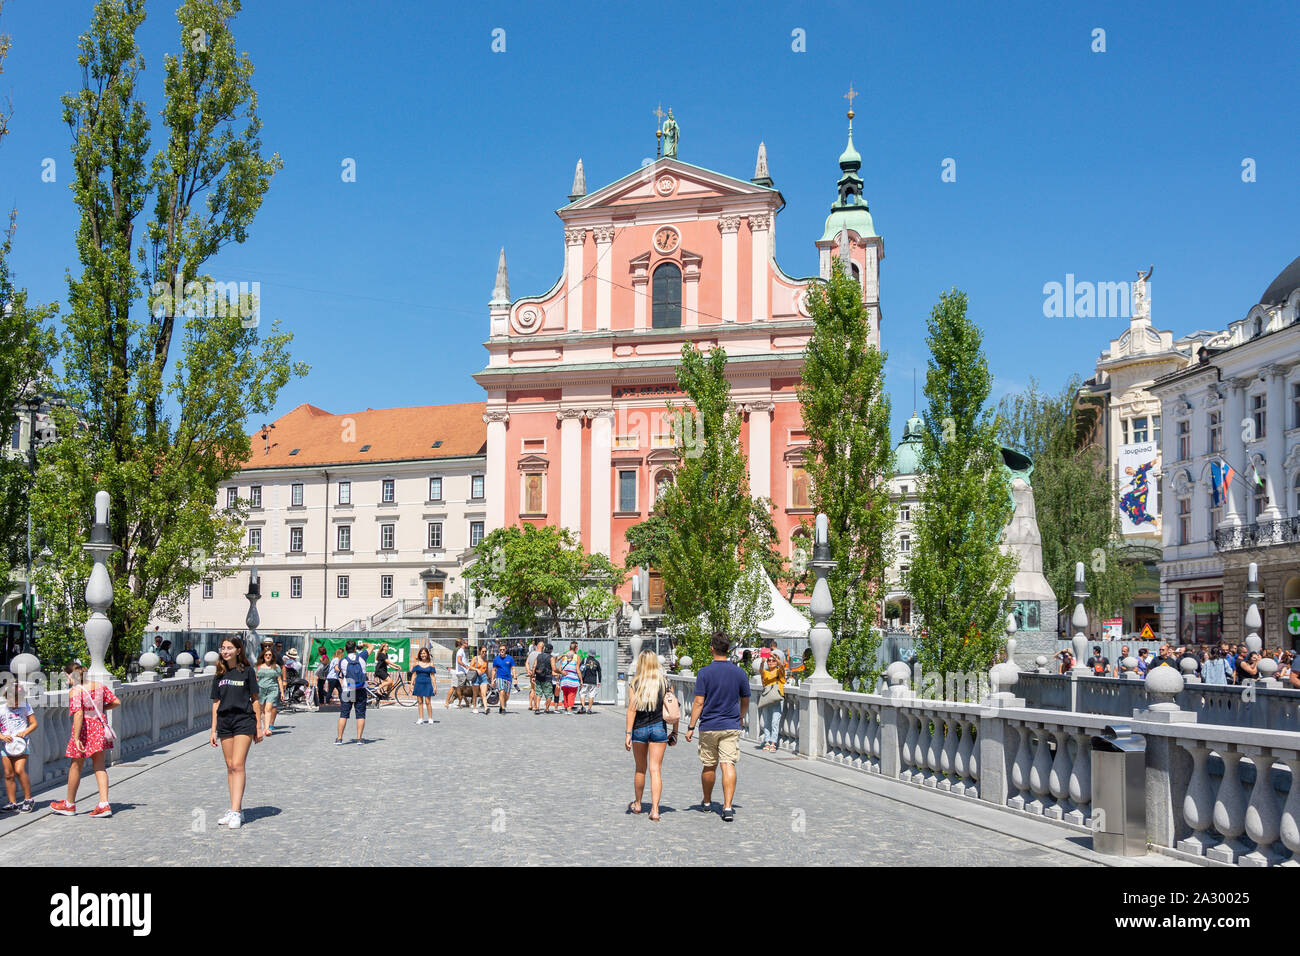 La iglesia franciscana de la Anunciación y Puentes Triples, Preseren, Old Town Square, Ljubljana, Eslovenia Foto de stock